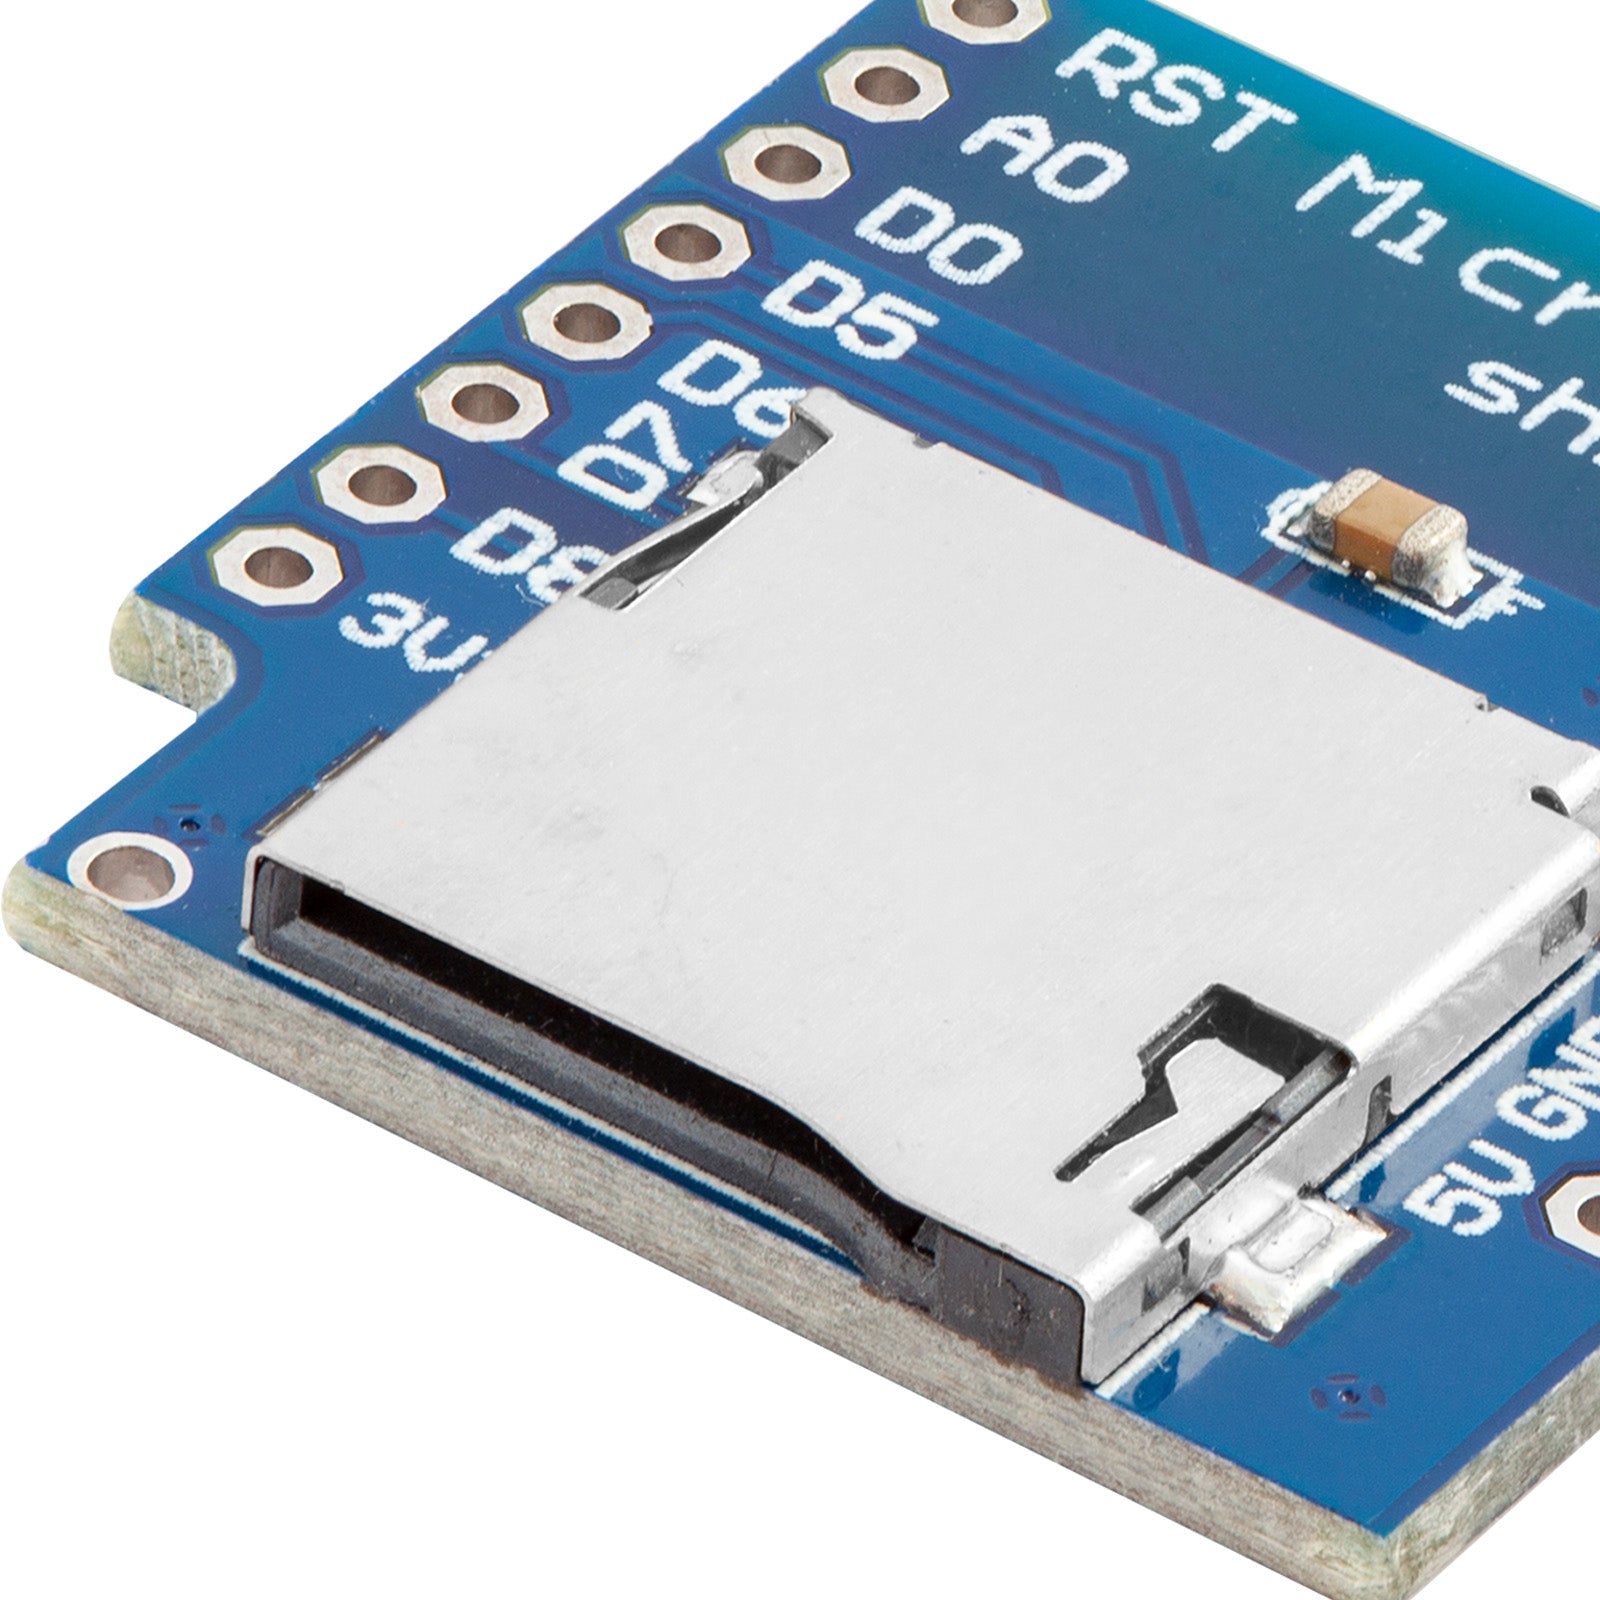 Módulo lector de tarjeta microsd micro sd card para arduino